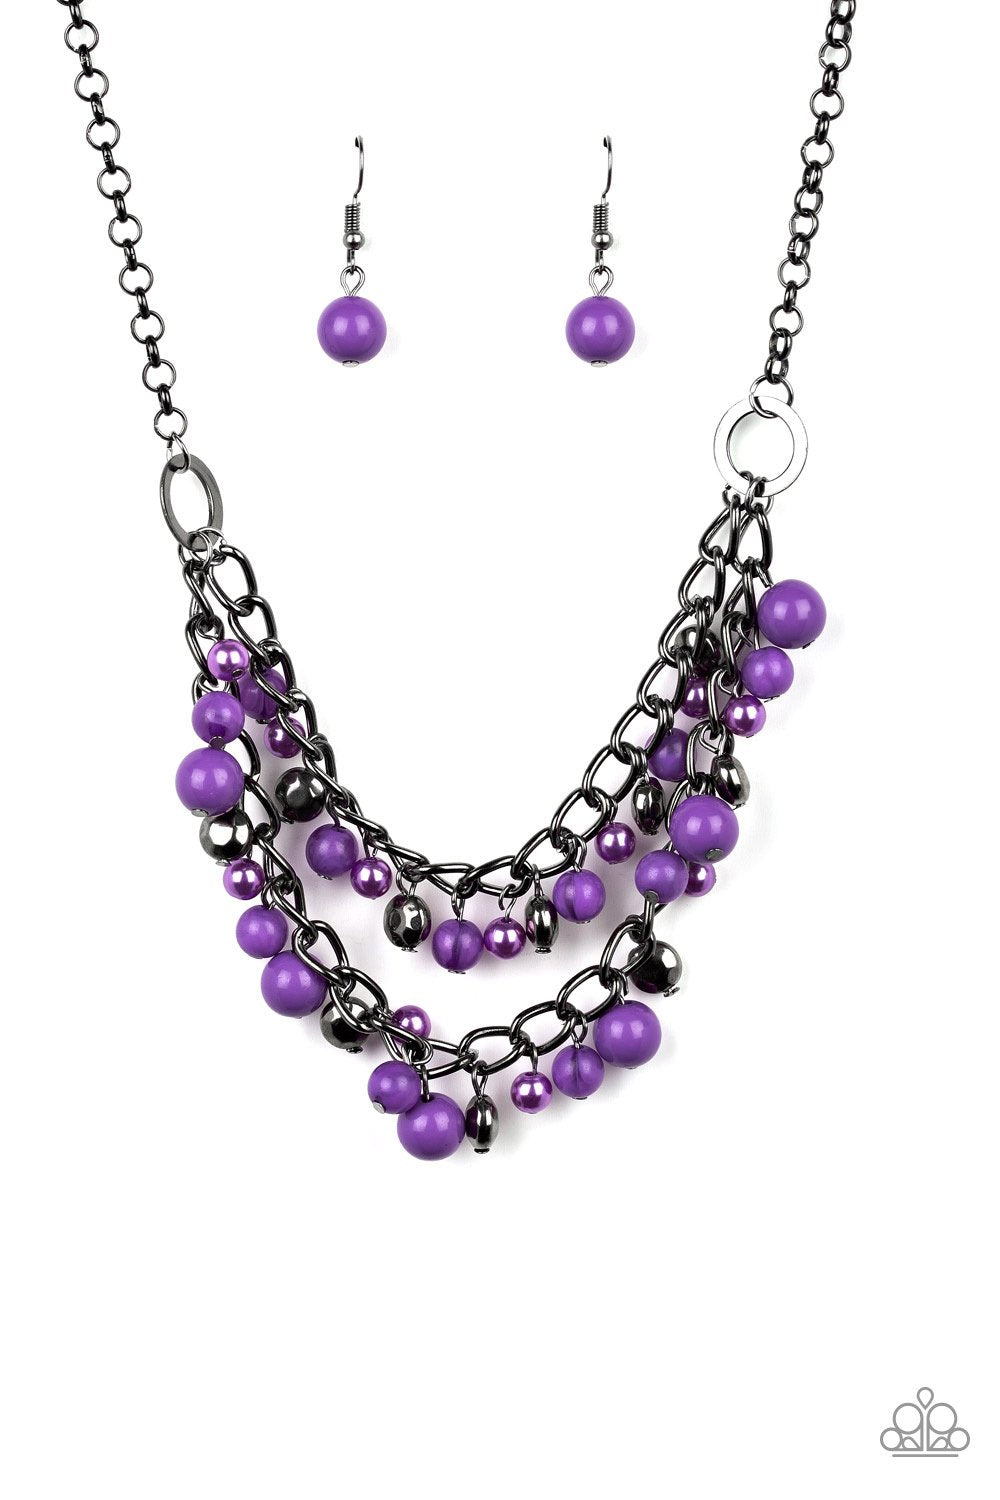 Watch Me Now Purple Necklace freeshipping - JewLz4u Gemstone Gallery